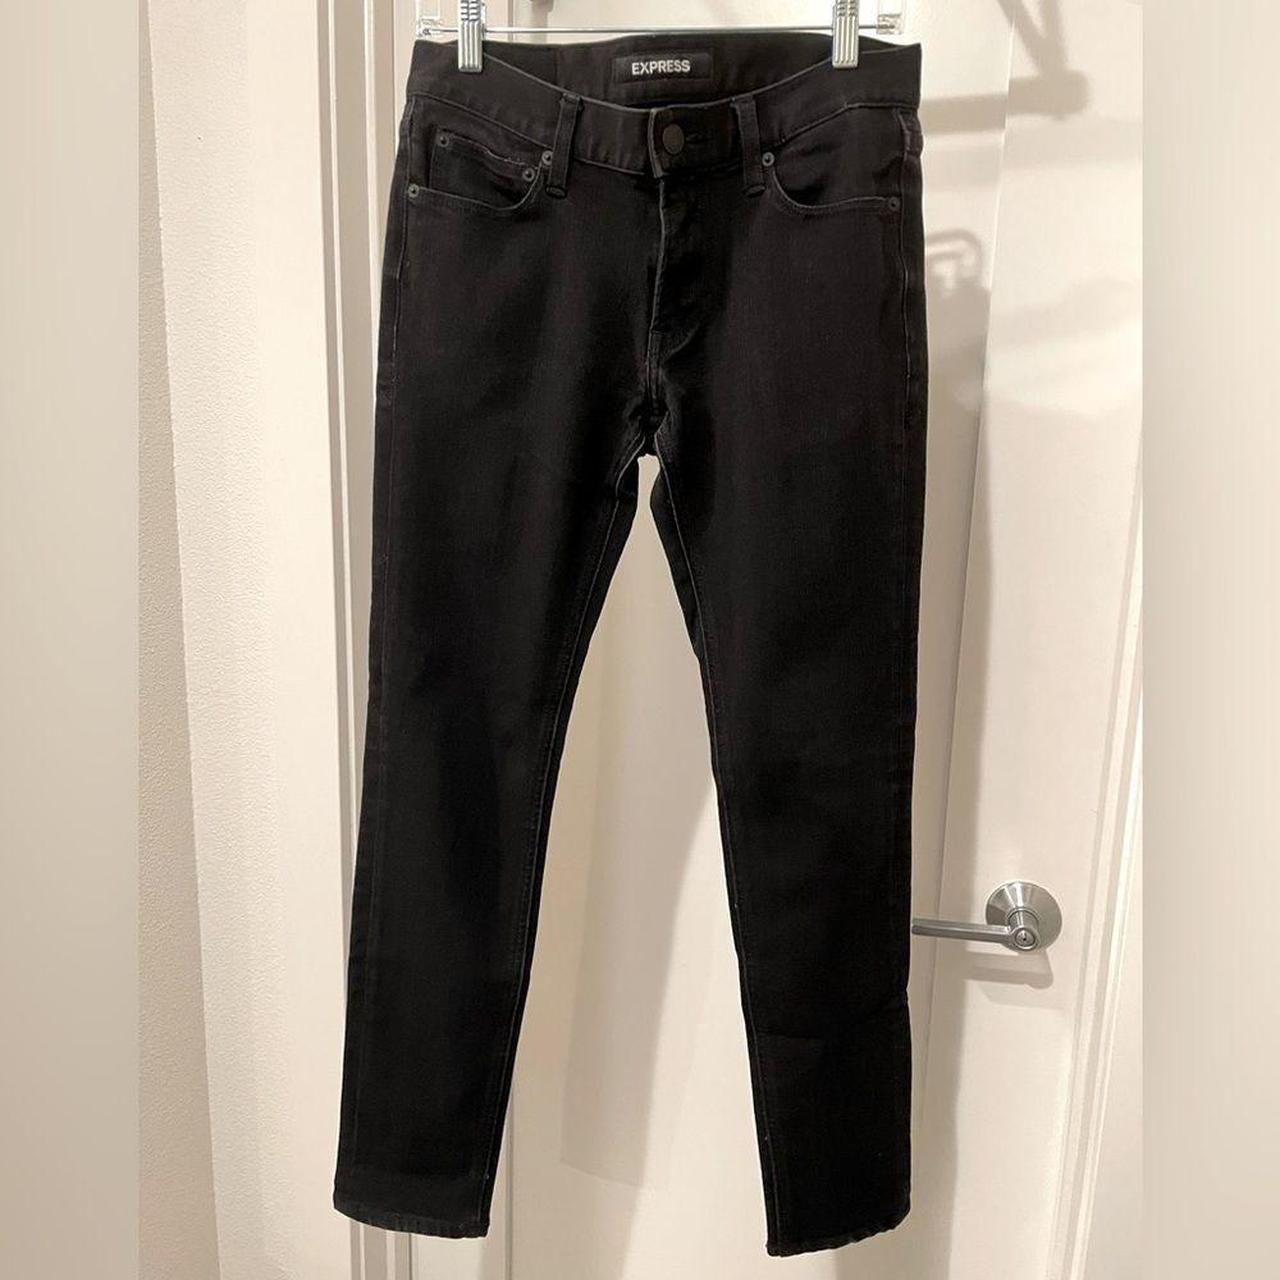 Express Skinny Black 4-Way Stretch Jeans (29x32) 72%... - Depop